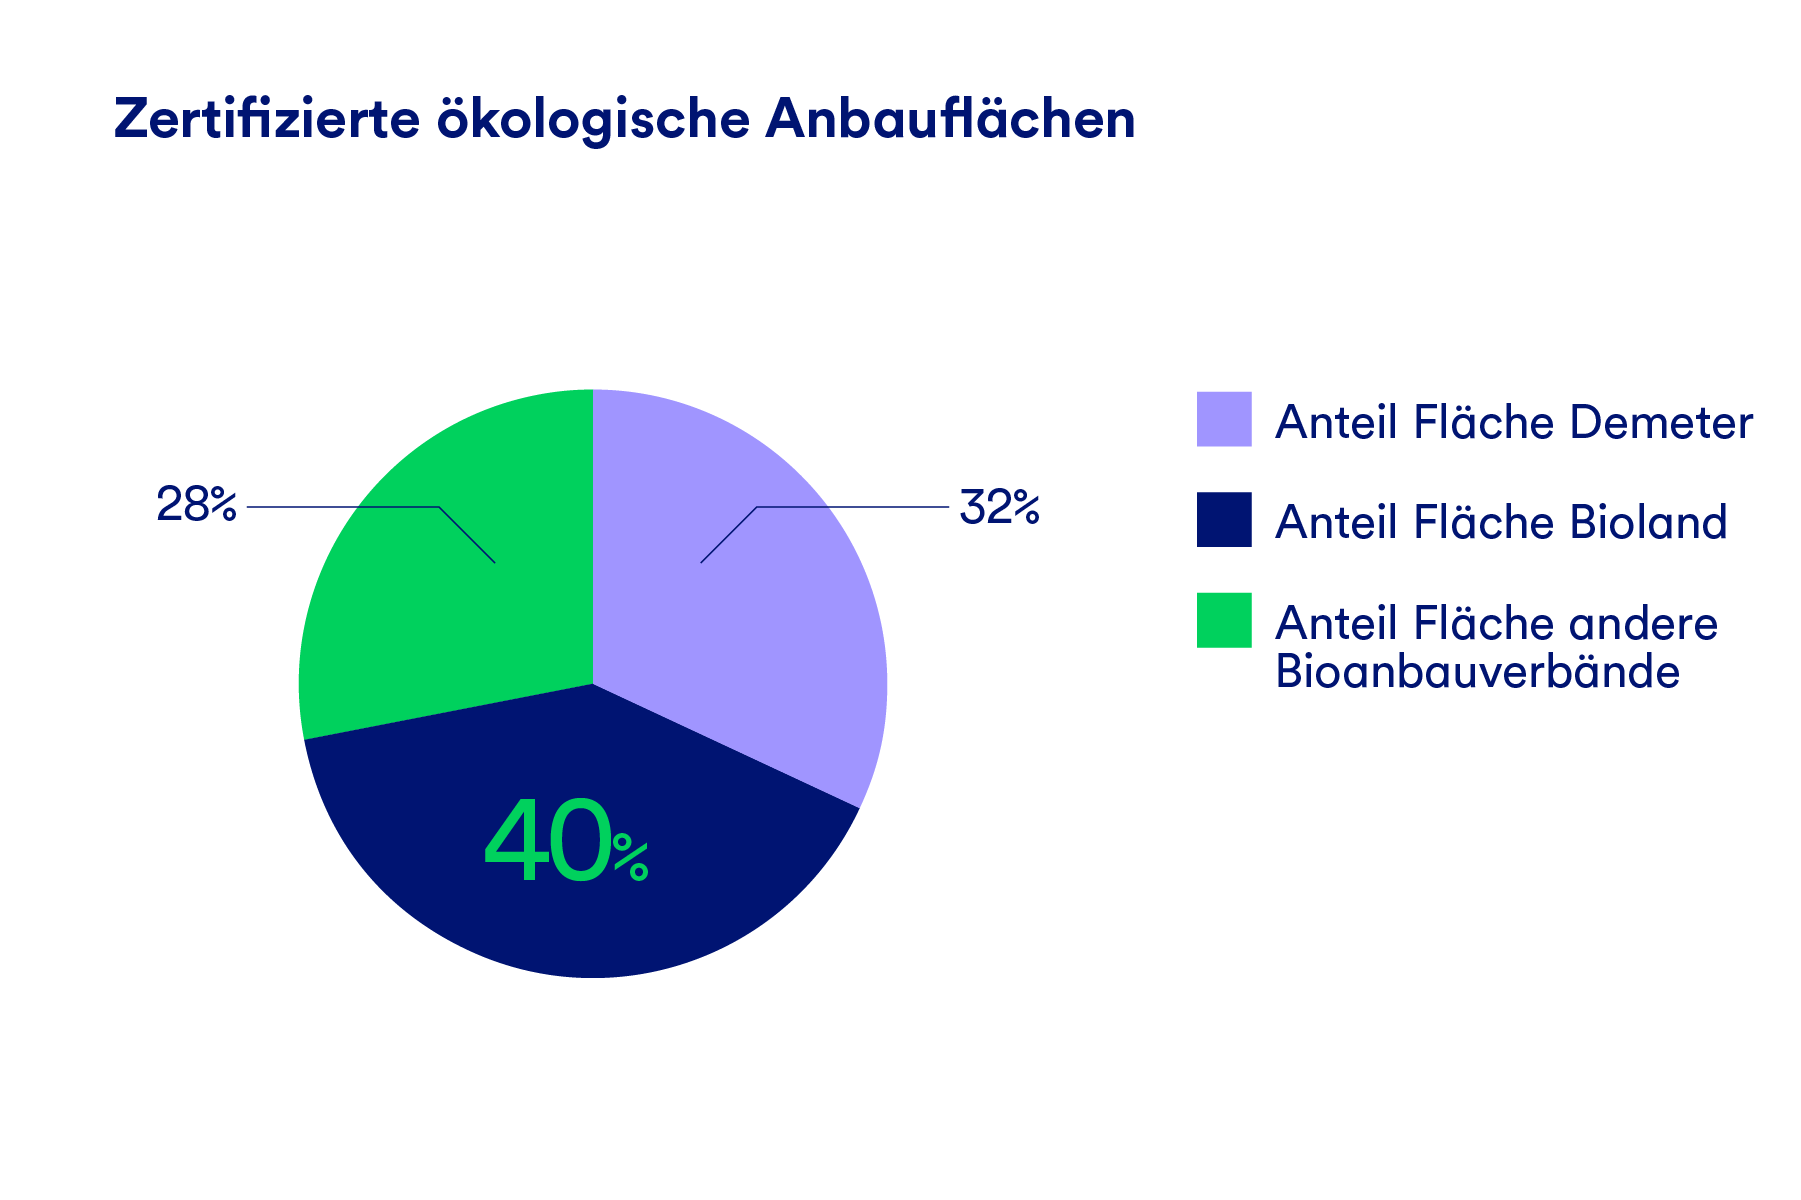 Eine Grafik, die die Anteile zertifizierter ökologischer Anbauflächen darstellt, aufgeteilt nach Demeter, Bioland und andere Bioanbauverbände.